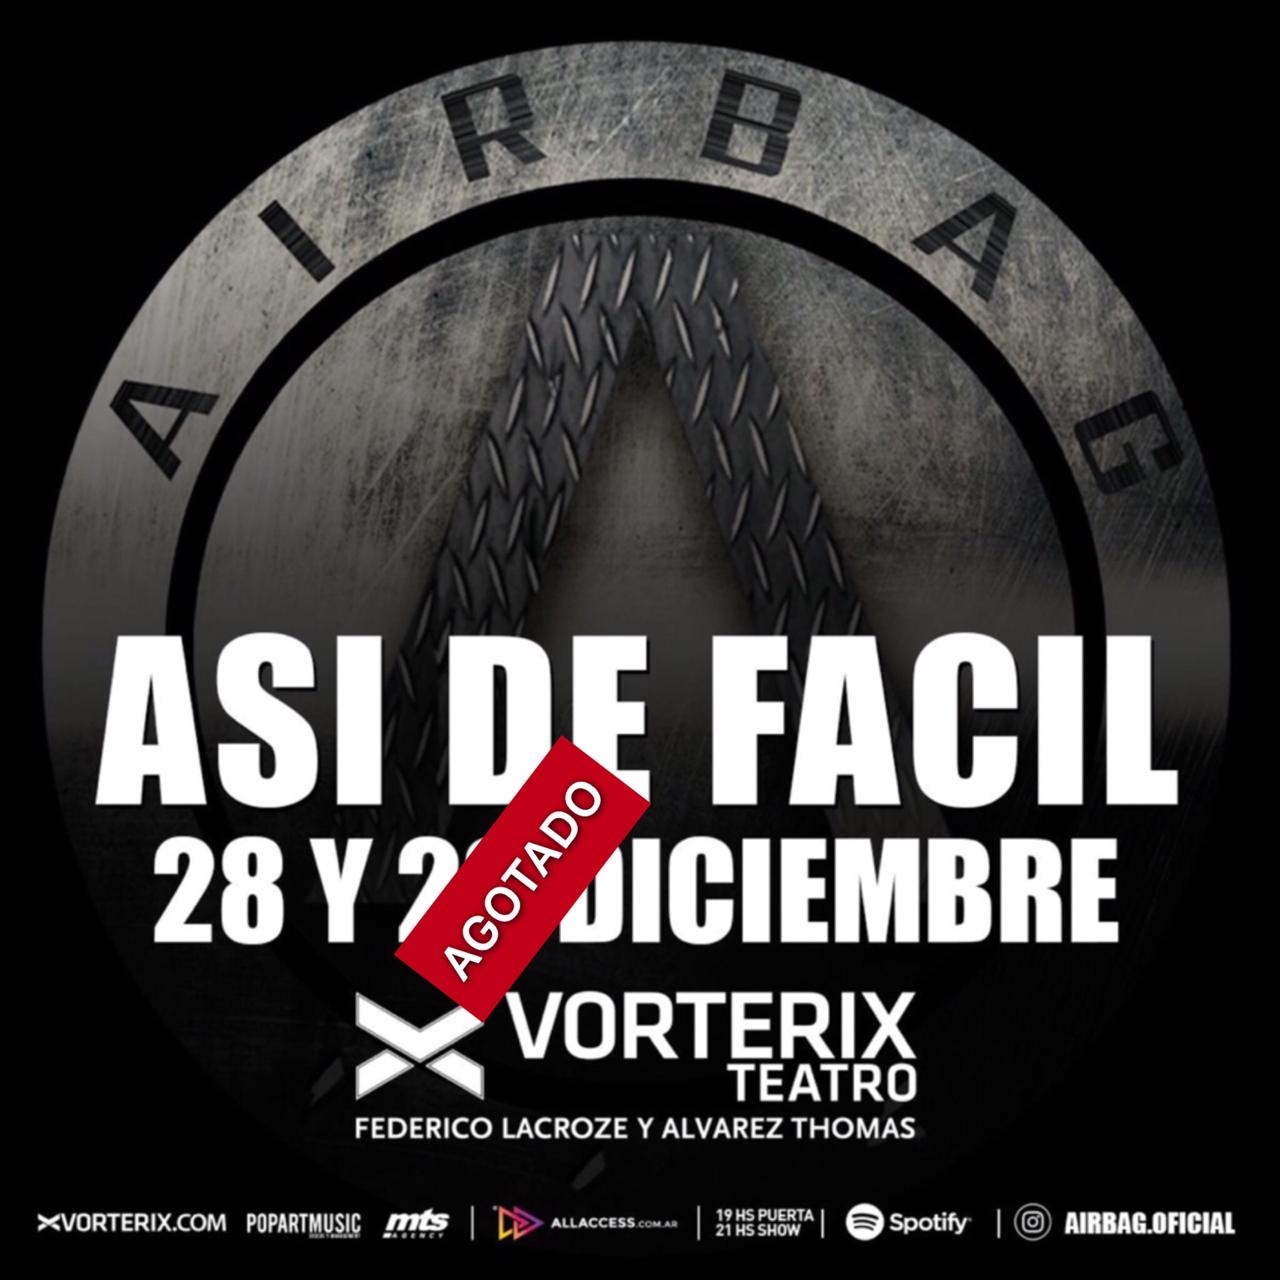 AIRBAG entradas agotadas en Vorterix para la función del 29 de diciembre! Últimos tickets para el 28!